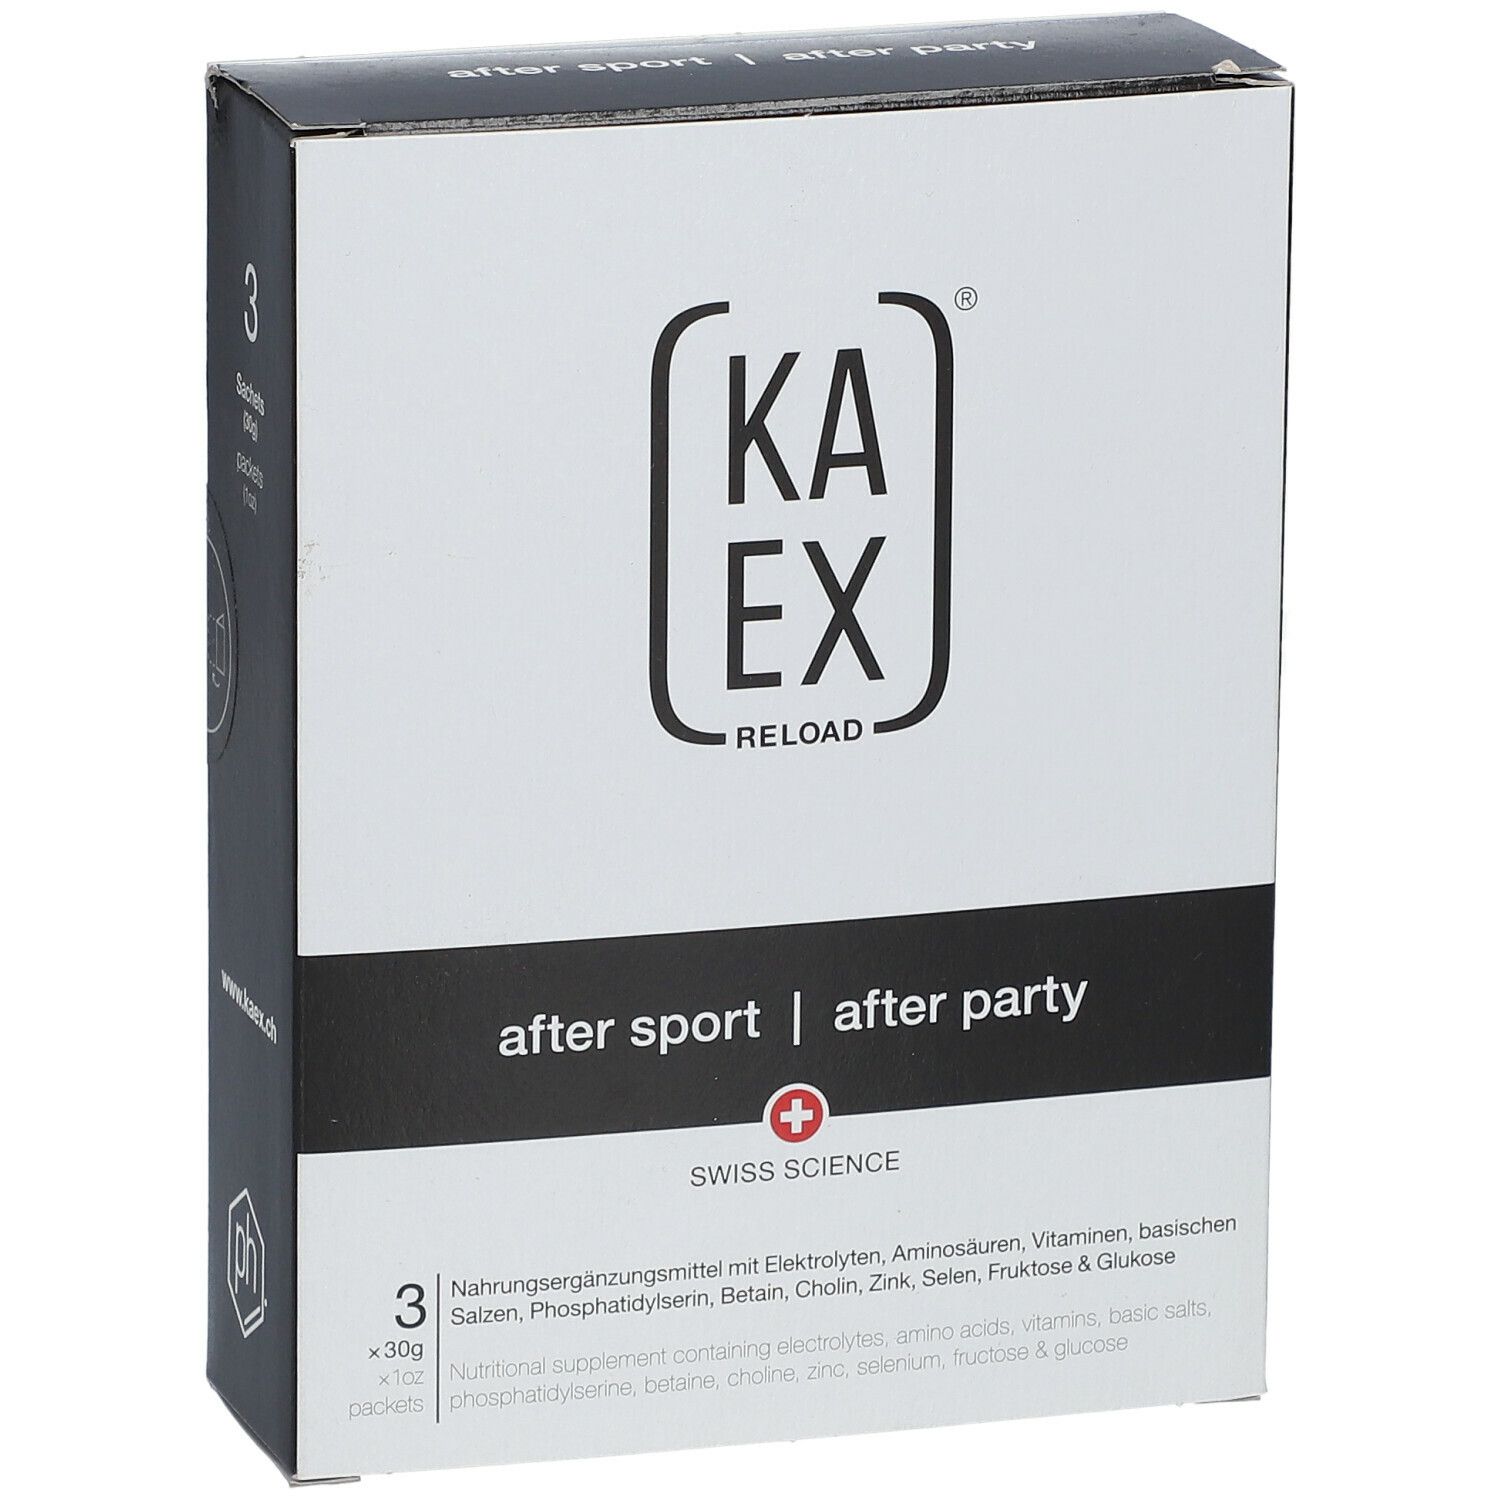 KAEX® RELOAD after sport